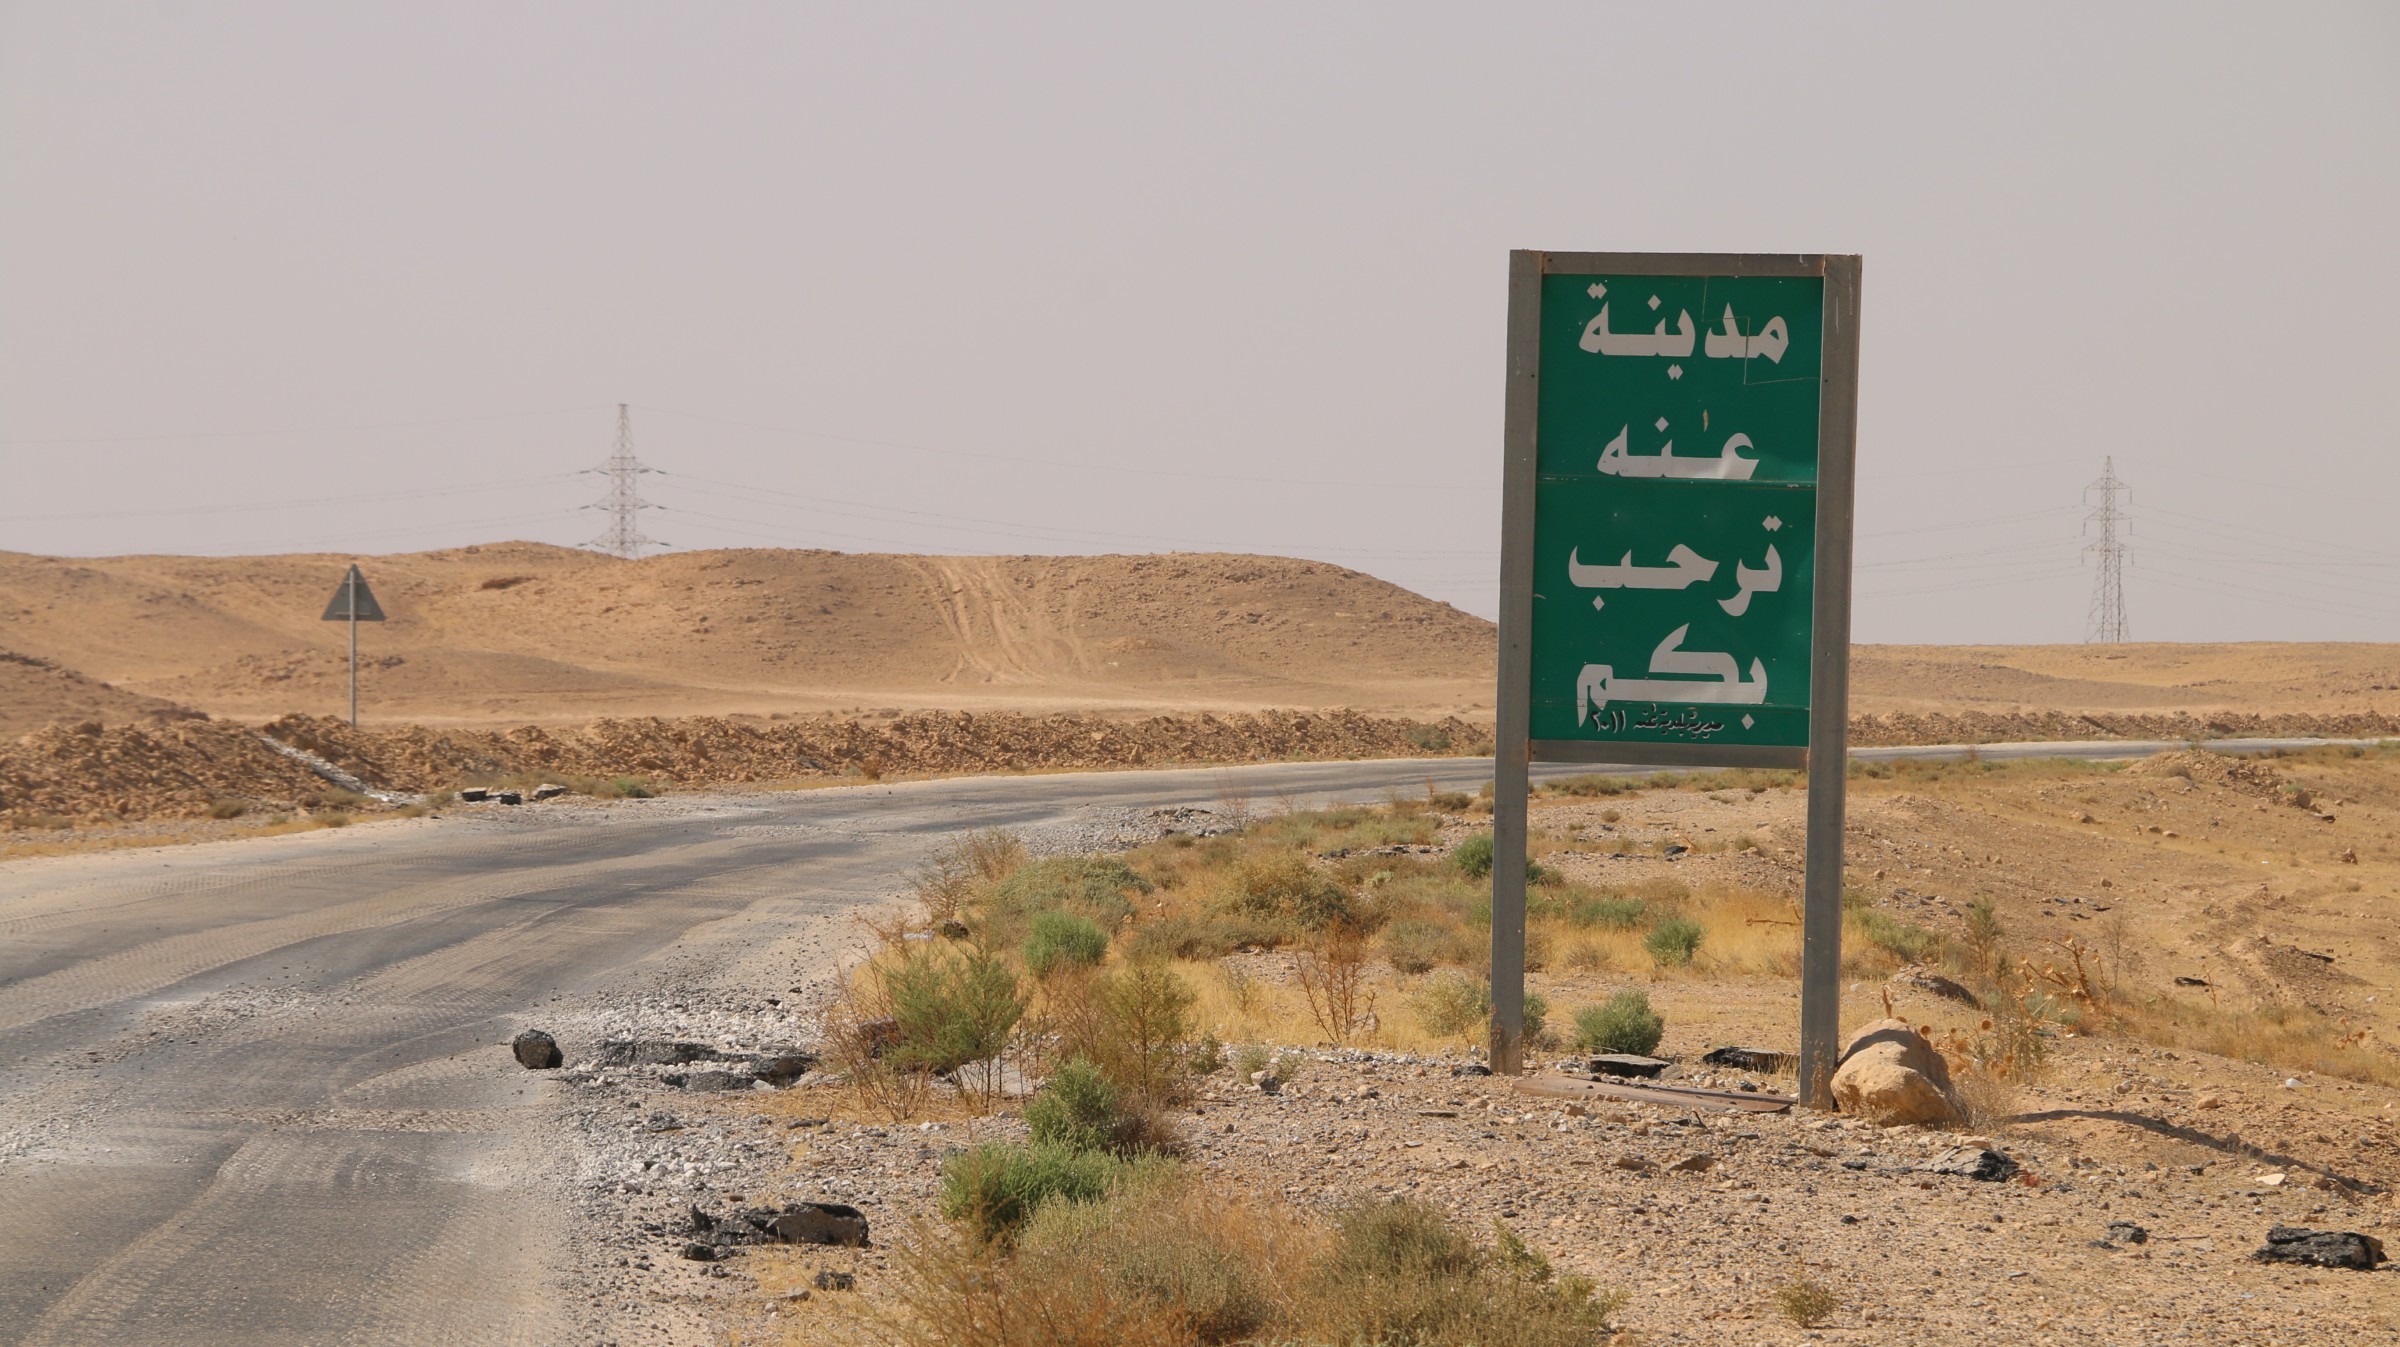 مسؤول انباري: 300 شخص اختطفهم داعش عام 2014 وما يزال مصيرهم مجهولا